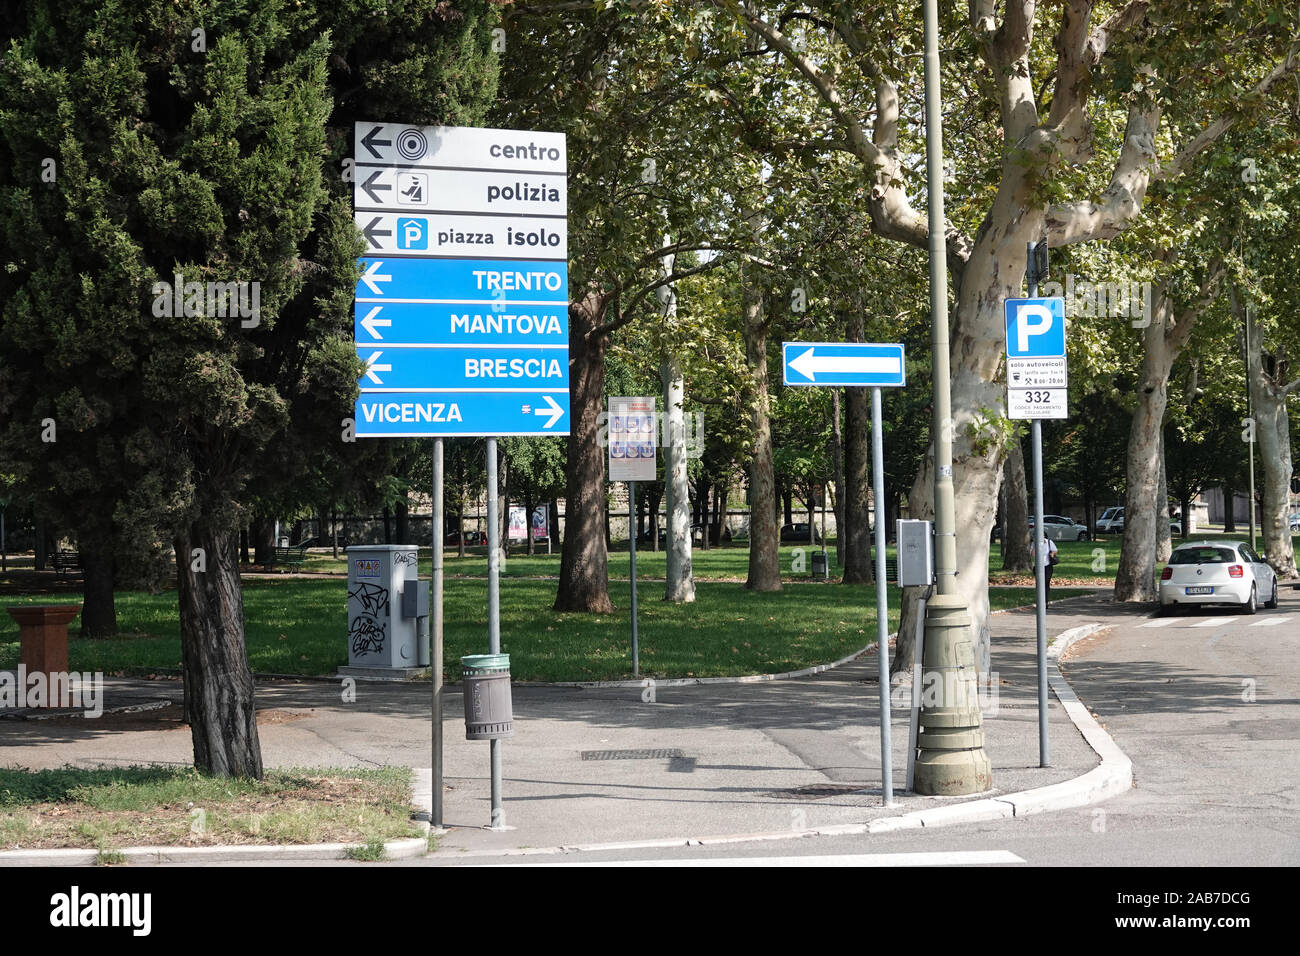 Indicazioni stradali a Verona, Italia Foto Stock